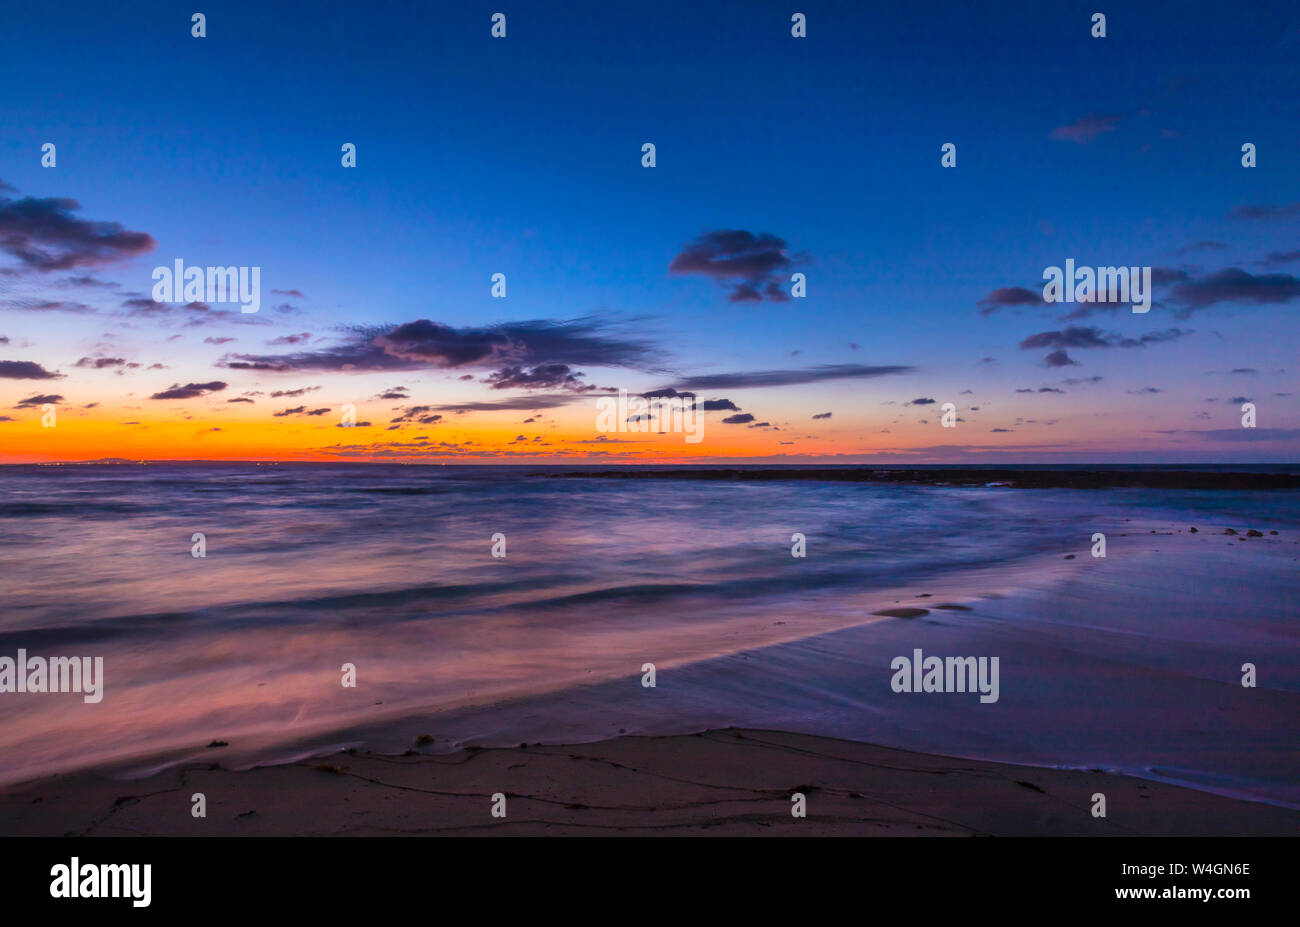 Beach at twilight, Varadero, Cuba Stock Photo